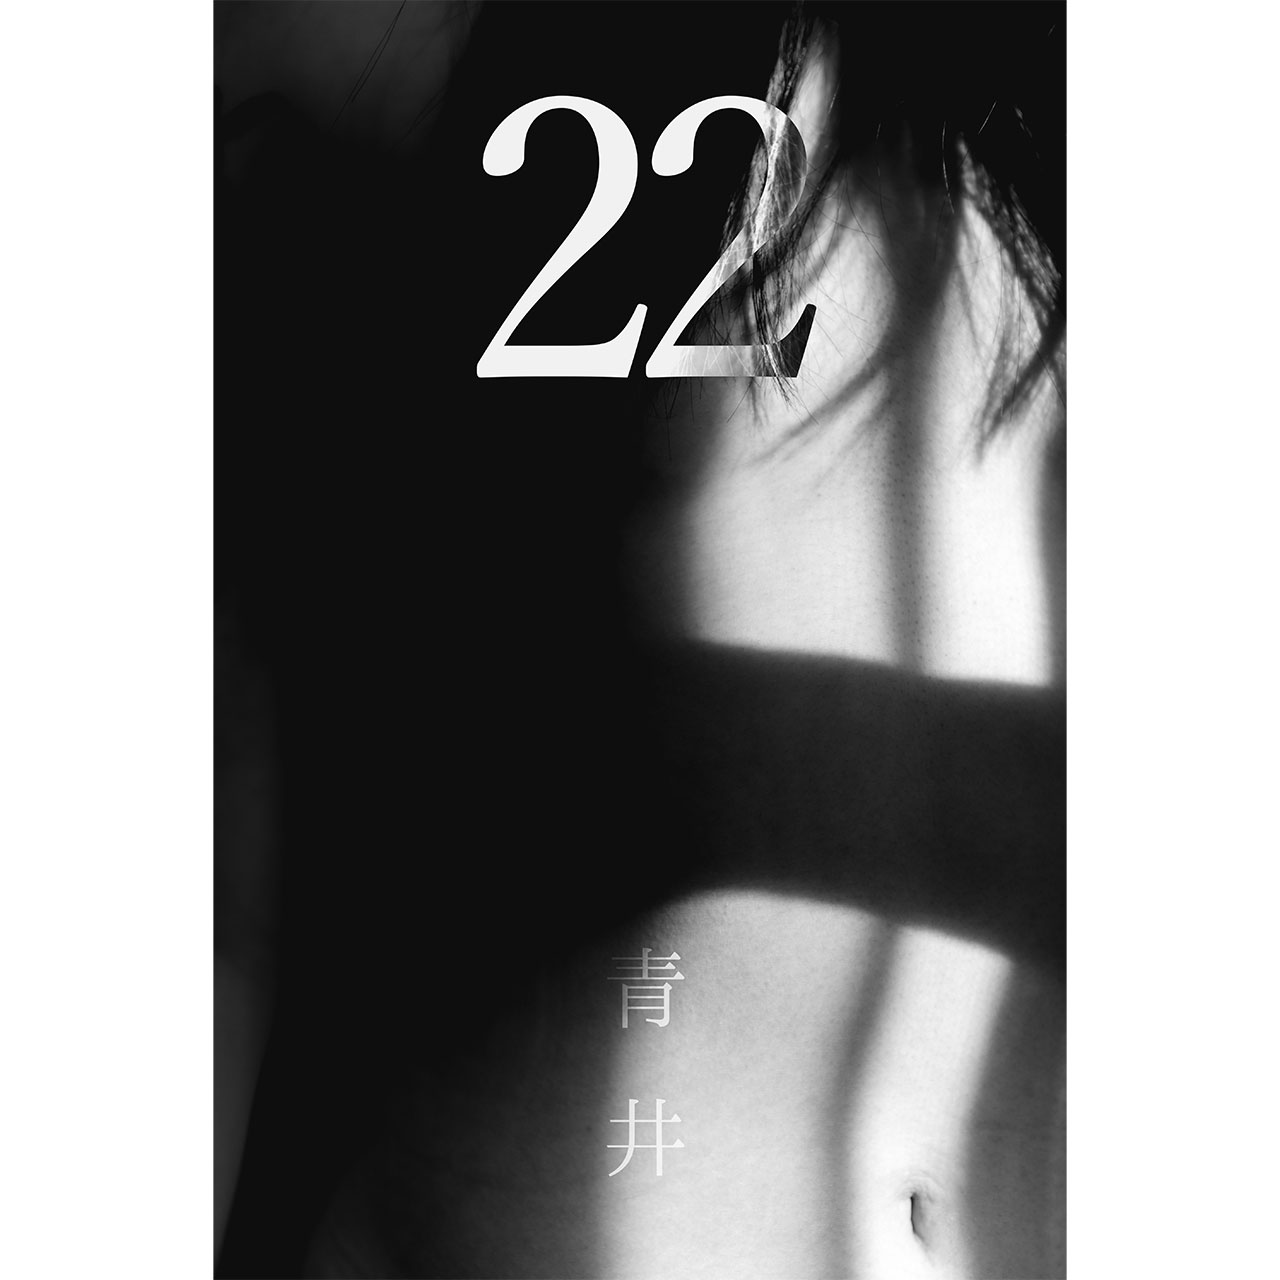 作家「青井」さんによる個展「22」開催のお知らせ